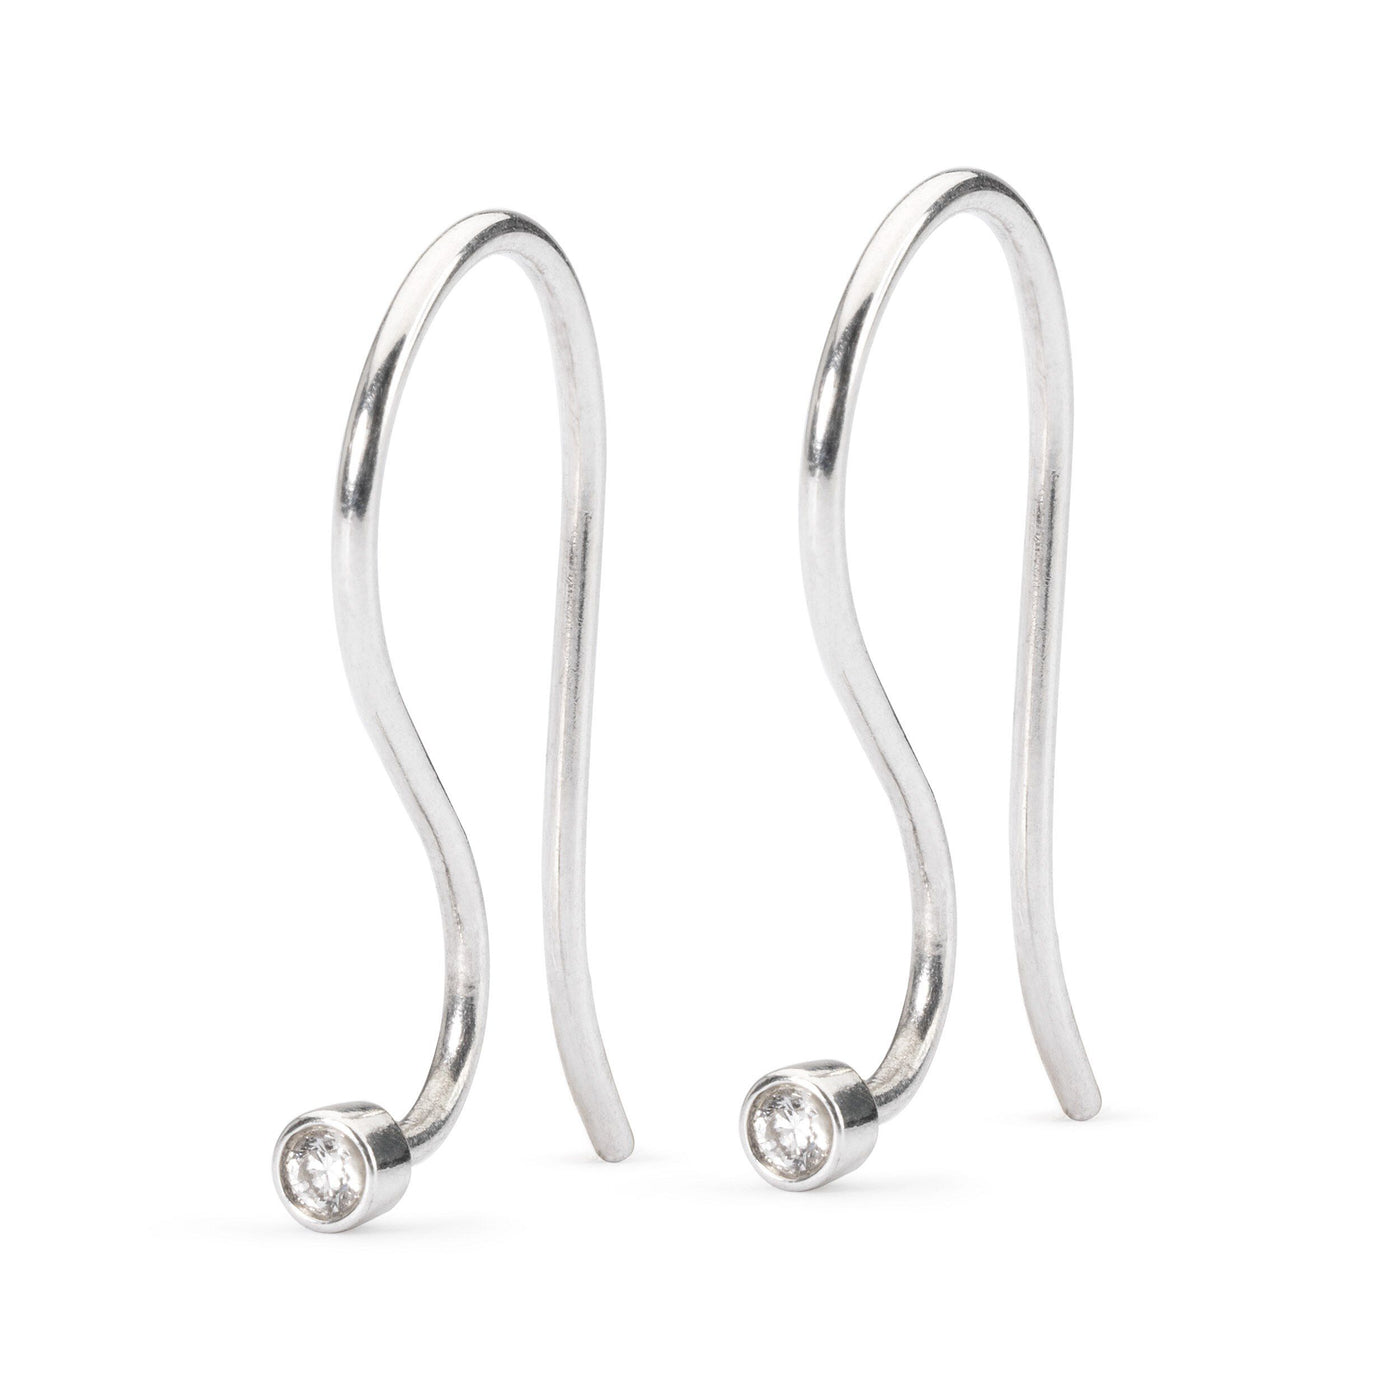 Earring Hooks, Silver/Brilliant - Trollbeads Canada